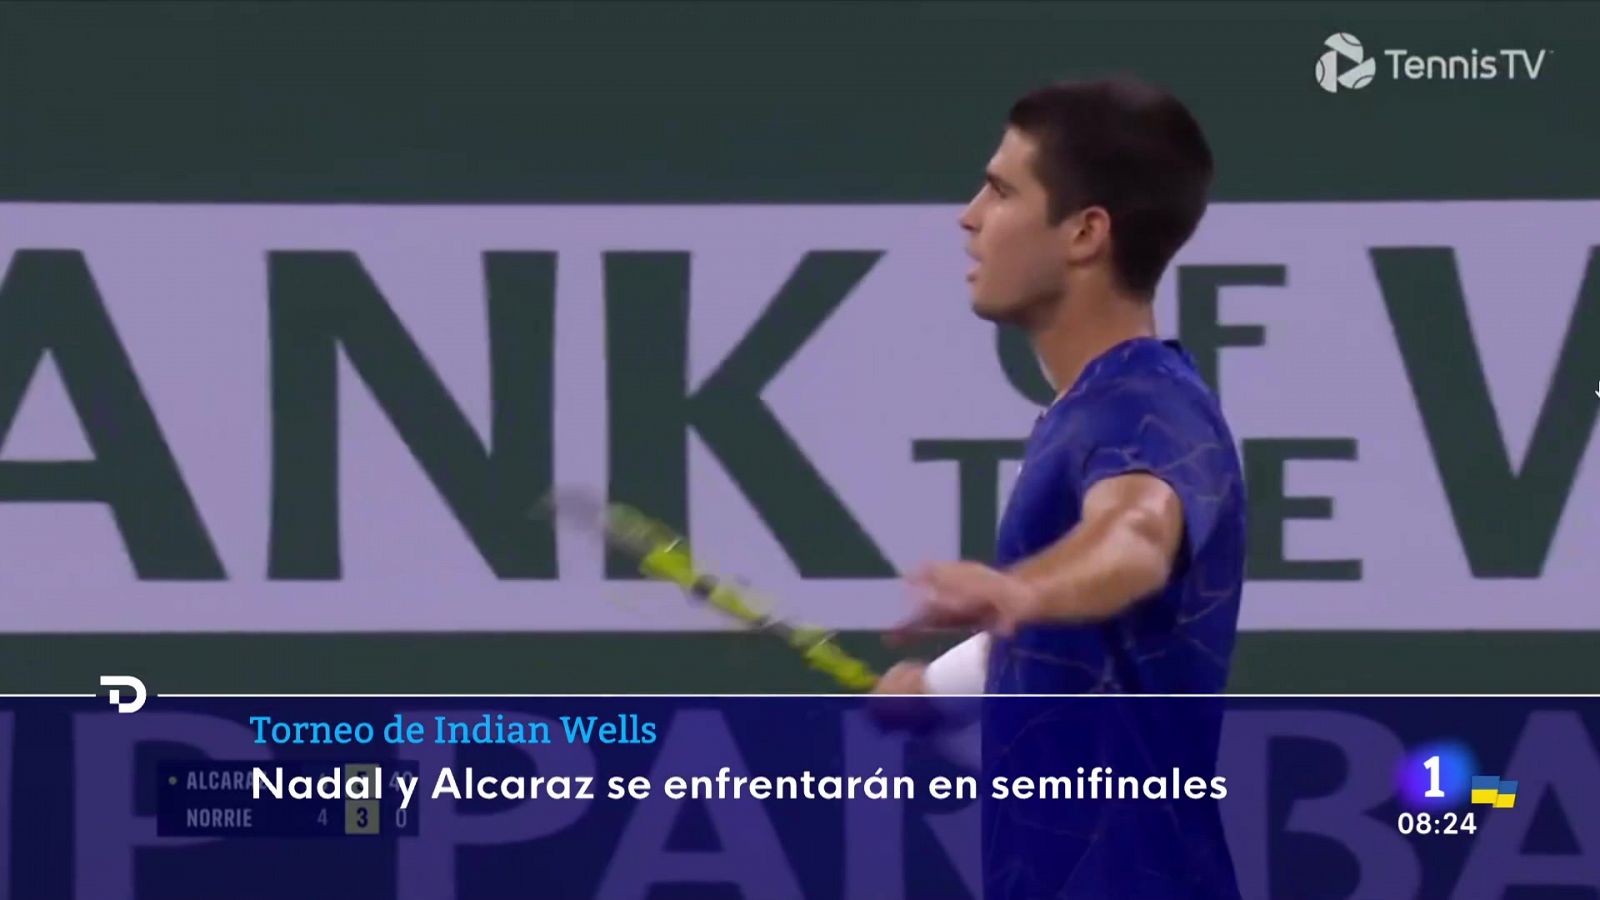  Nadal y Carlos Alcaraz se citan en semis de Indian Wells